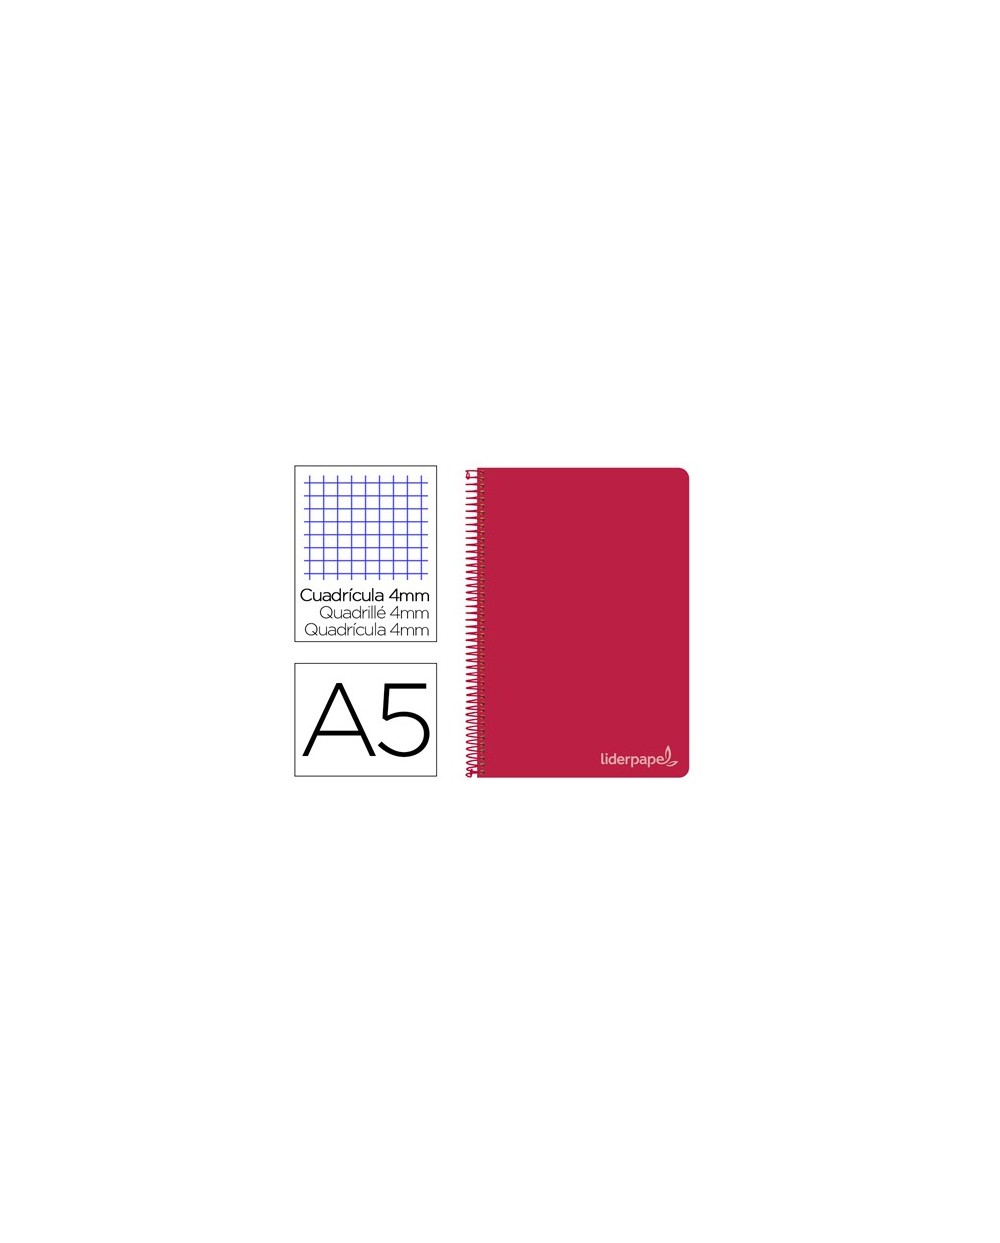 Cuaderno espiral liderpapel cuarto witty tapa dura 80h 75gr cuadro 4mm con margen color rojo